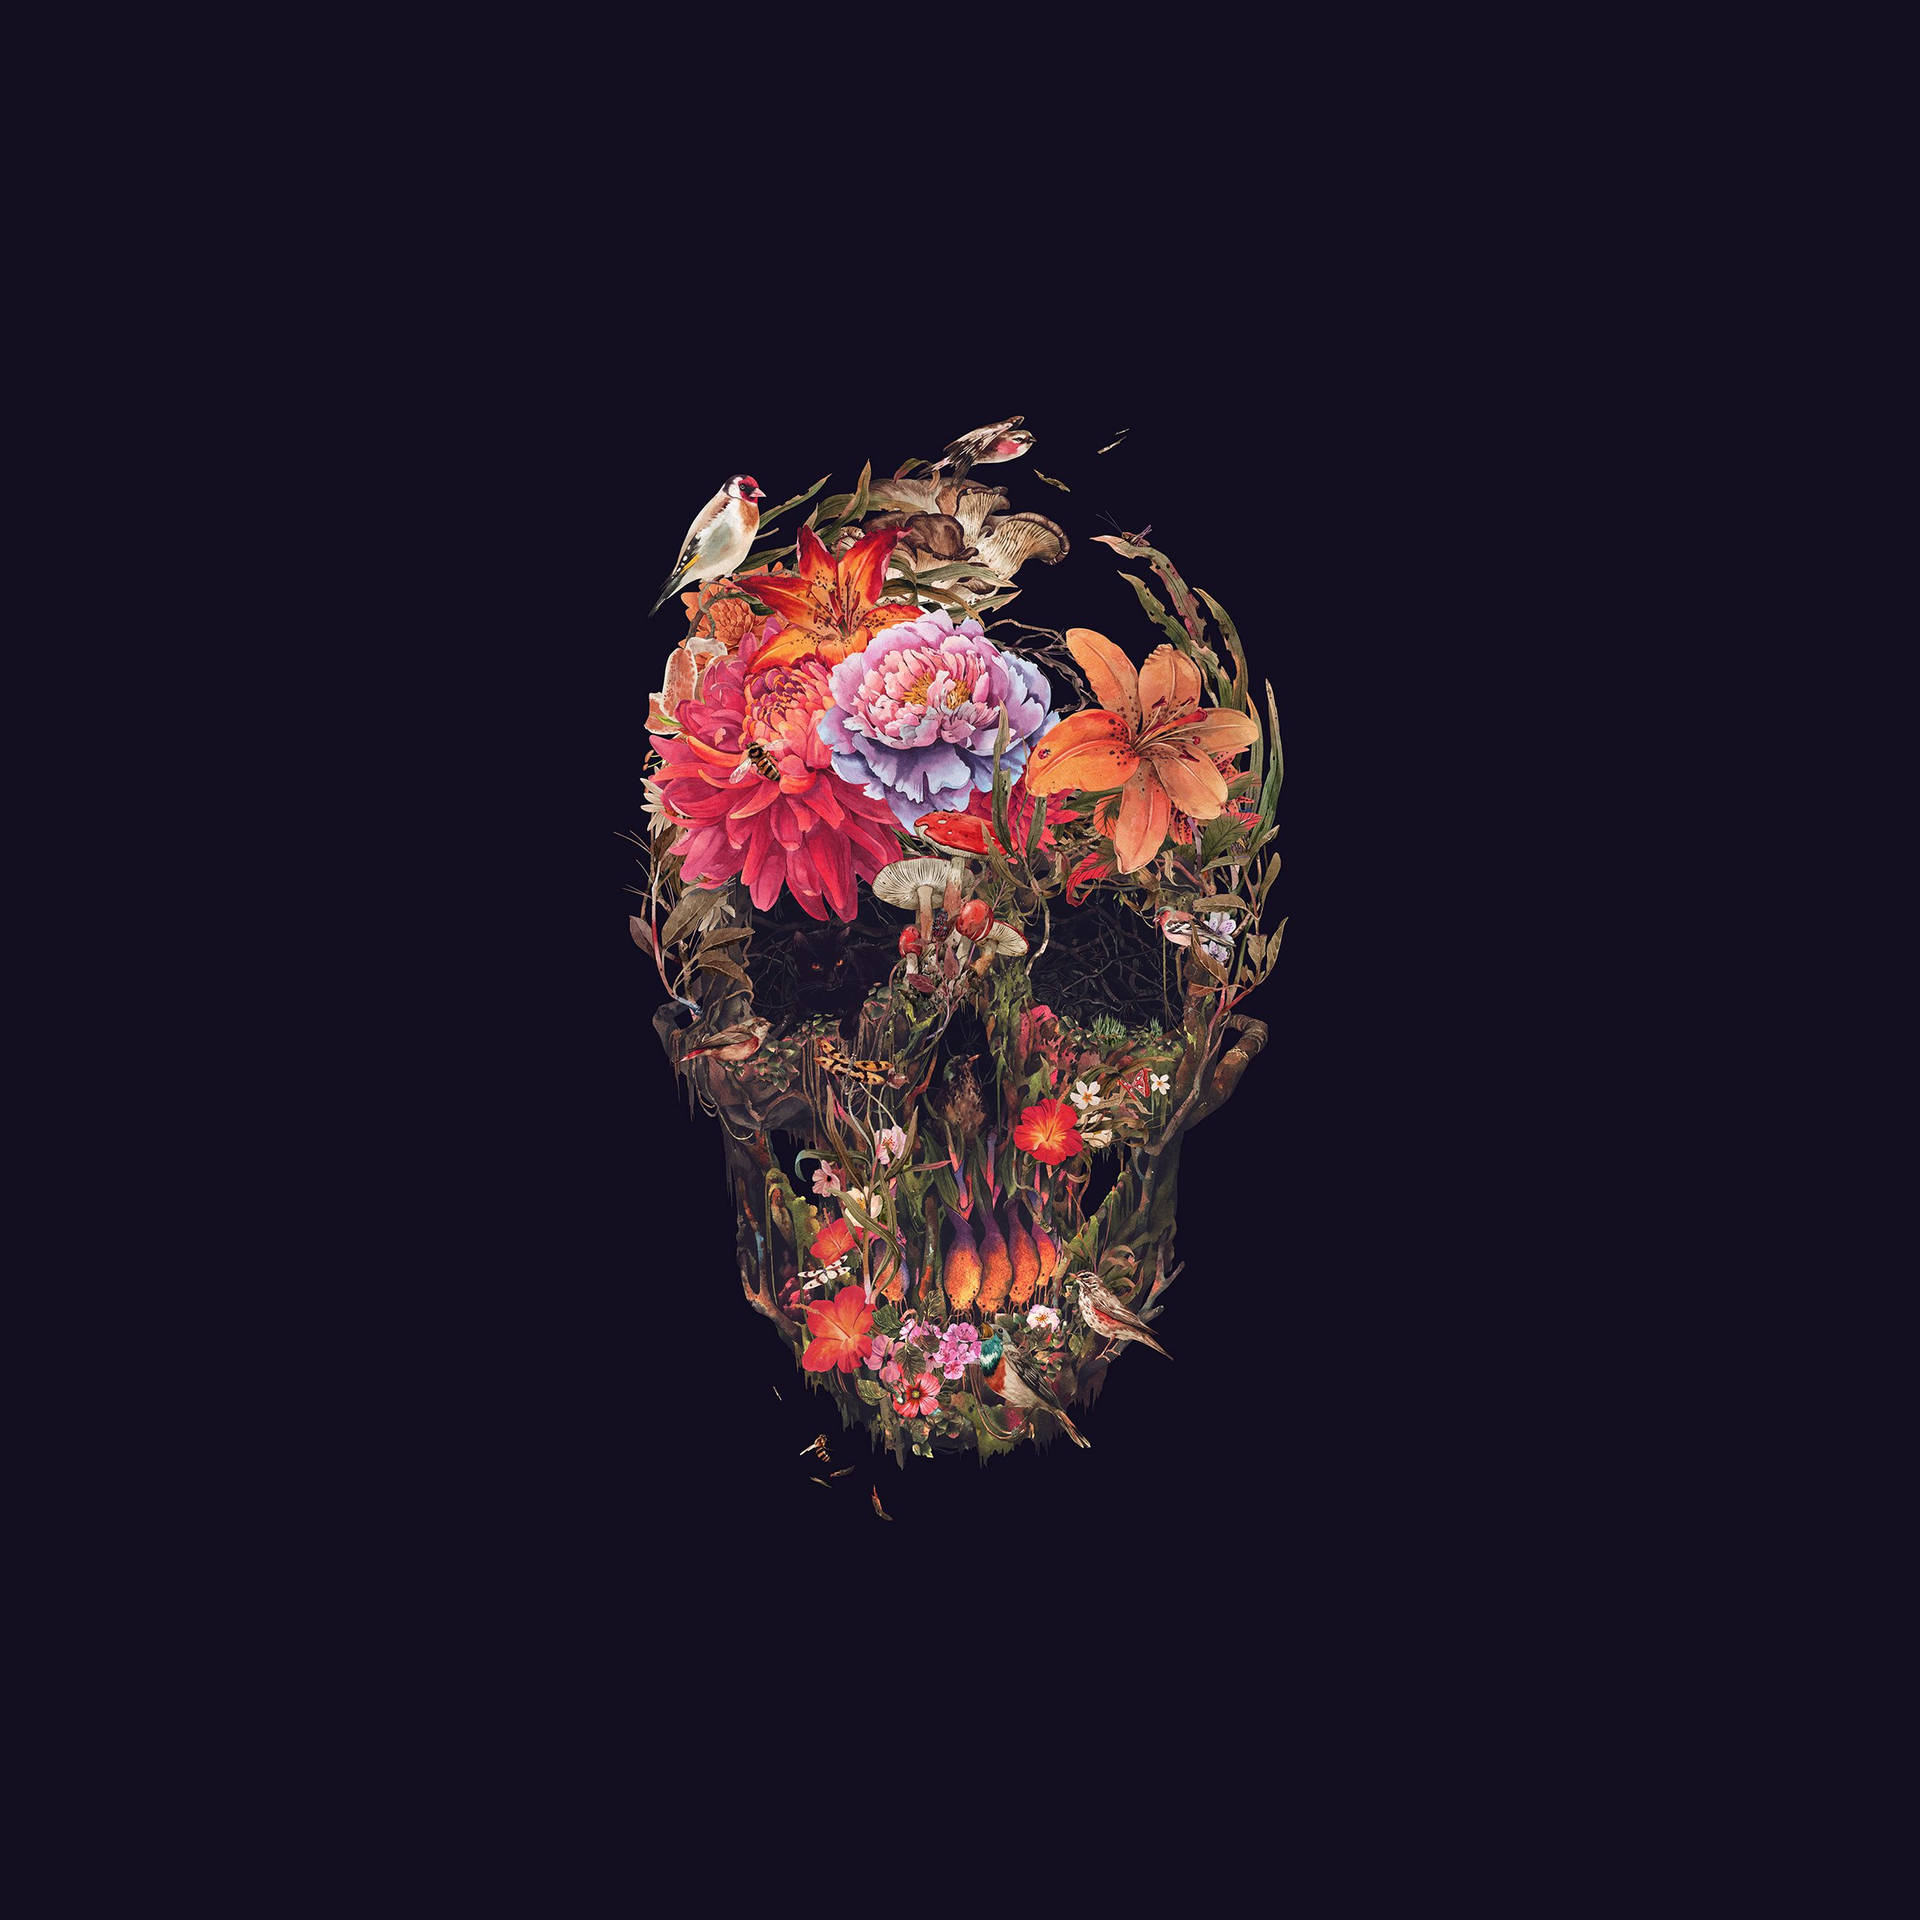 Eerie Skull And Dark Hd Flowers Wallpaper